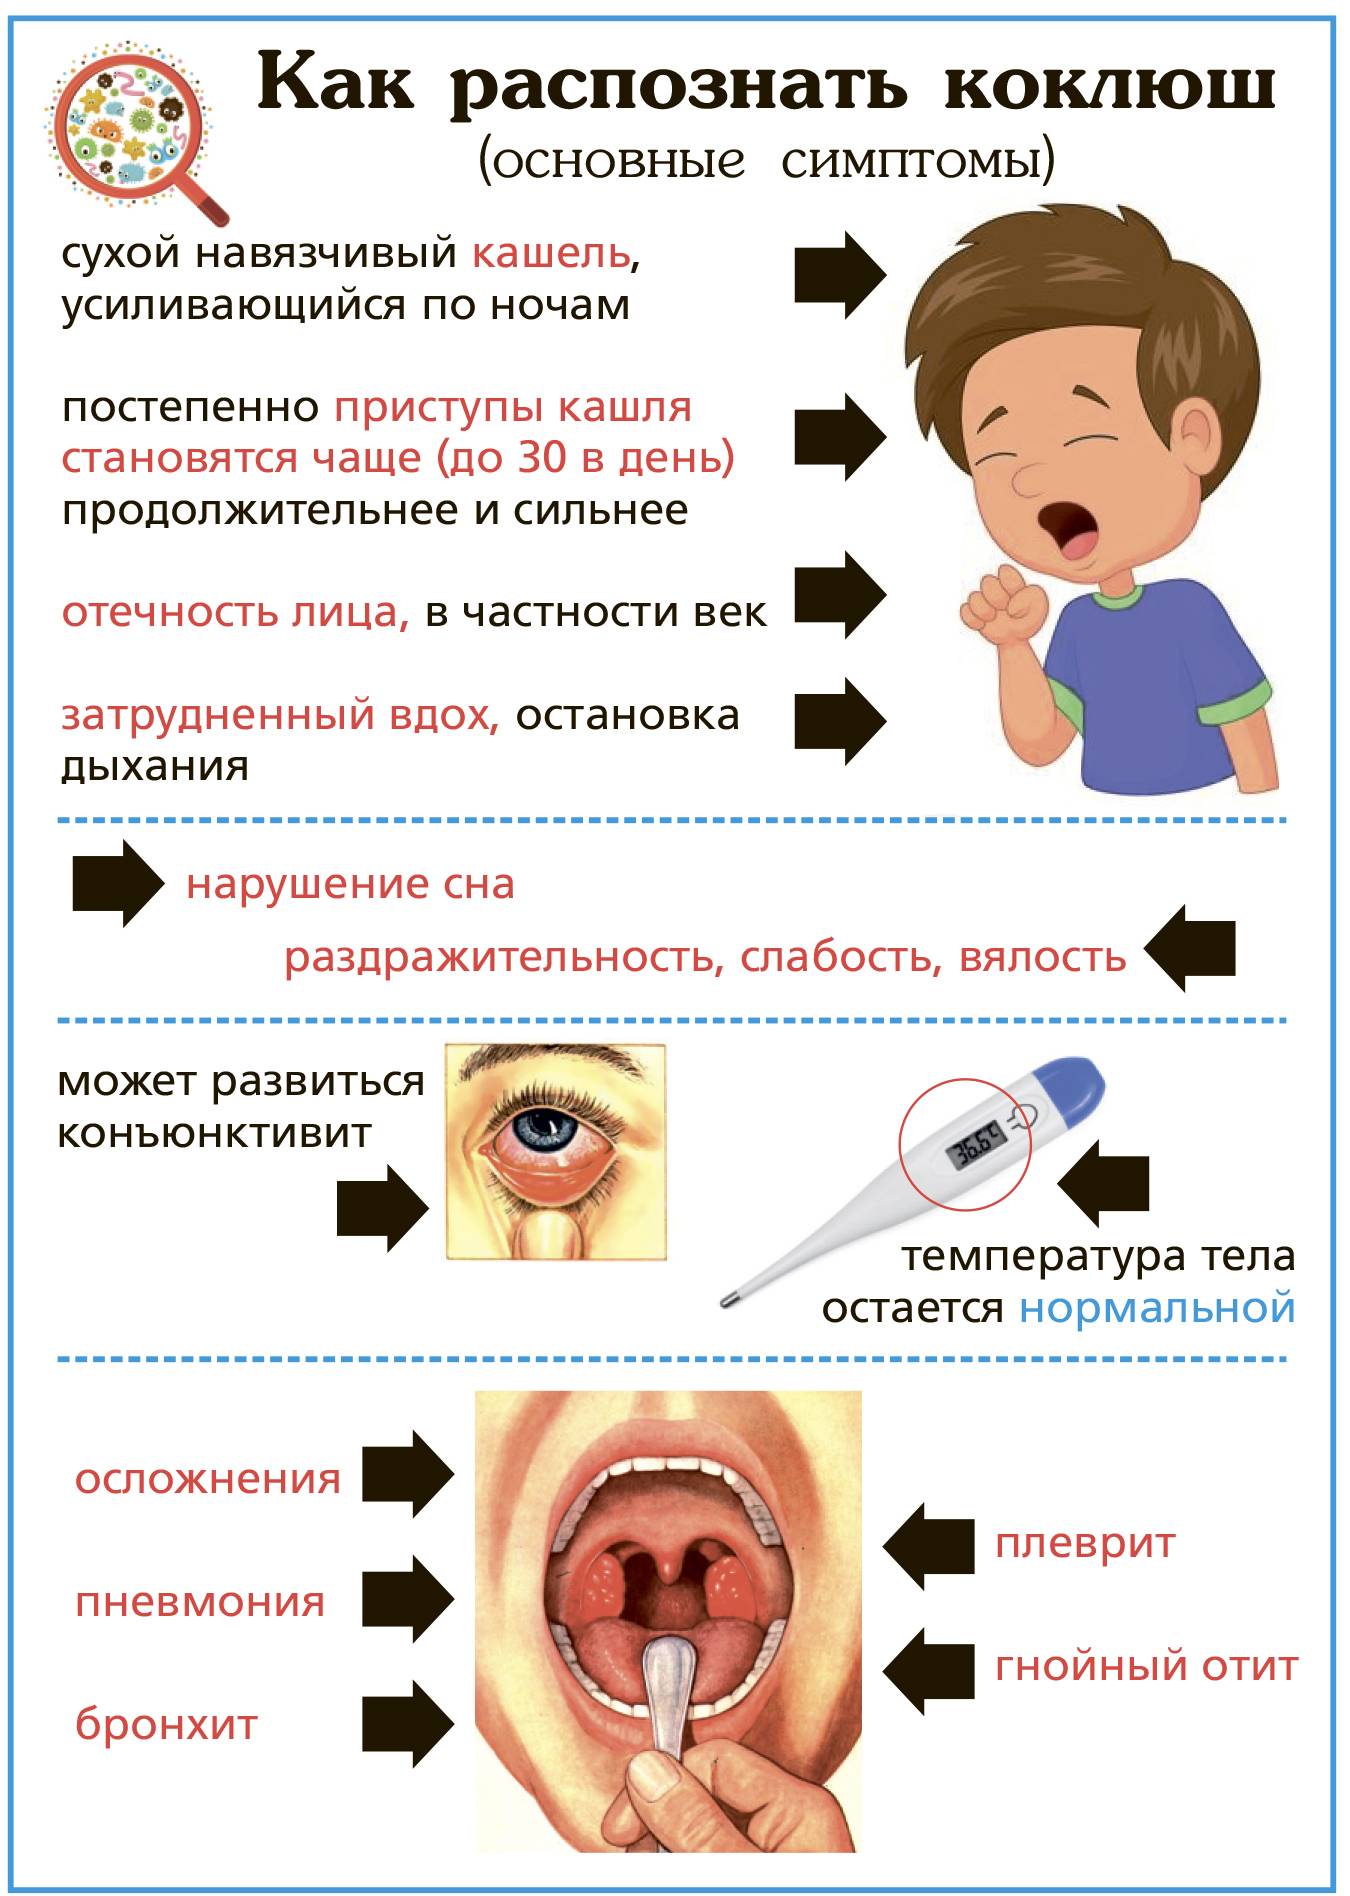 Паракоклюш: симптомы у детей, принципы лечения